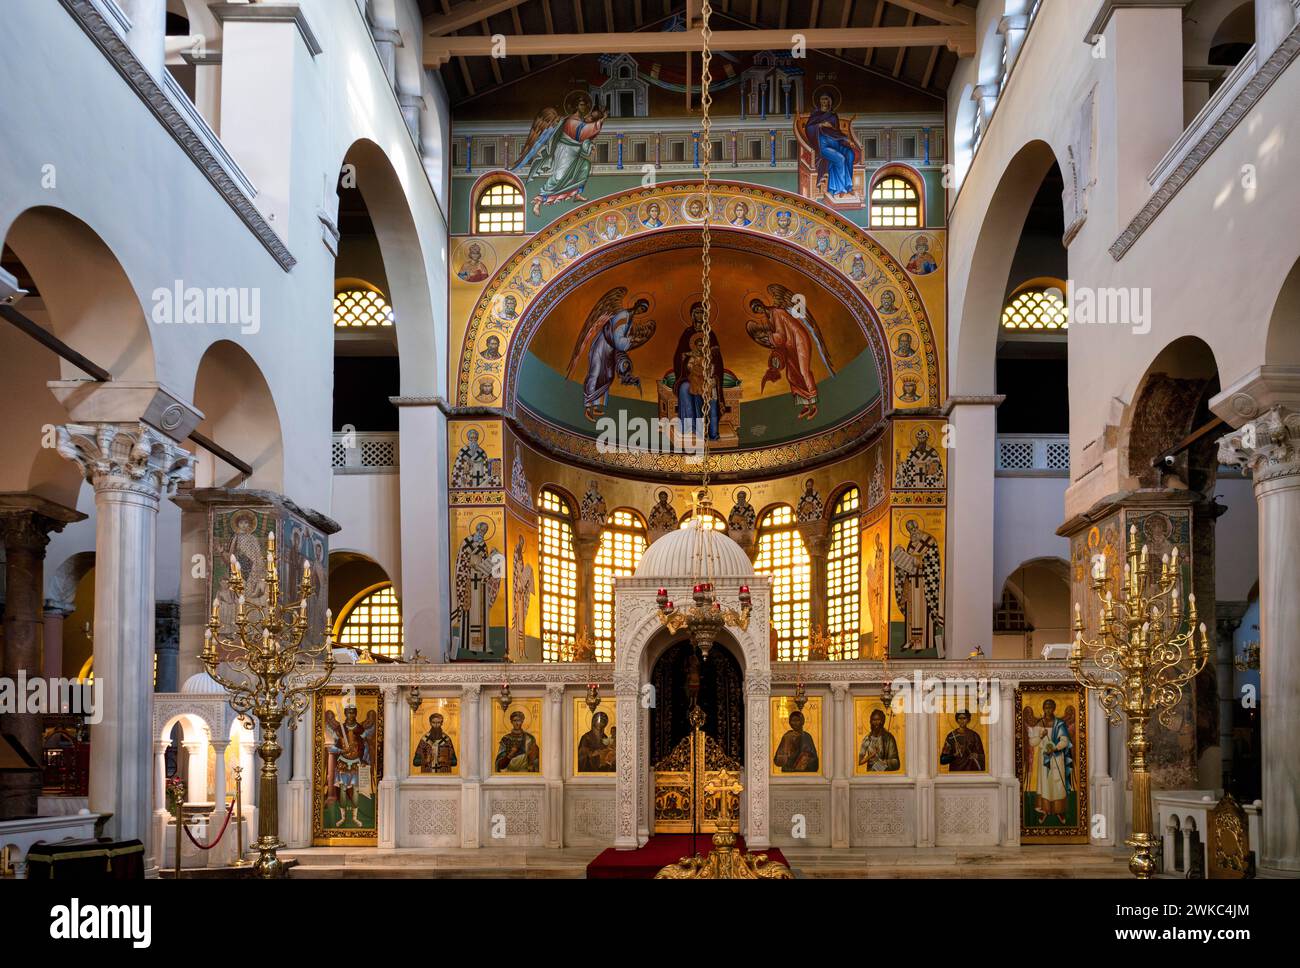 Vista interna della chiesa di Hagios Demetrios, conosciuta anche come Agios Dimtrios o Basilica di Demetrio, Salonicco, Macedonia, Grecia Foto Stock